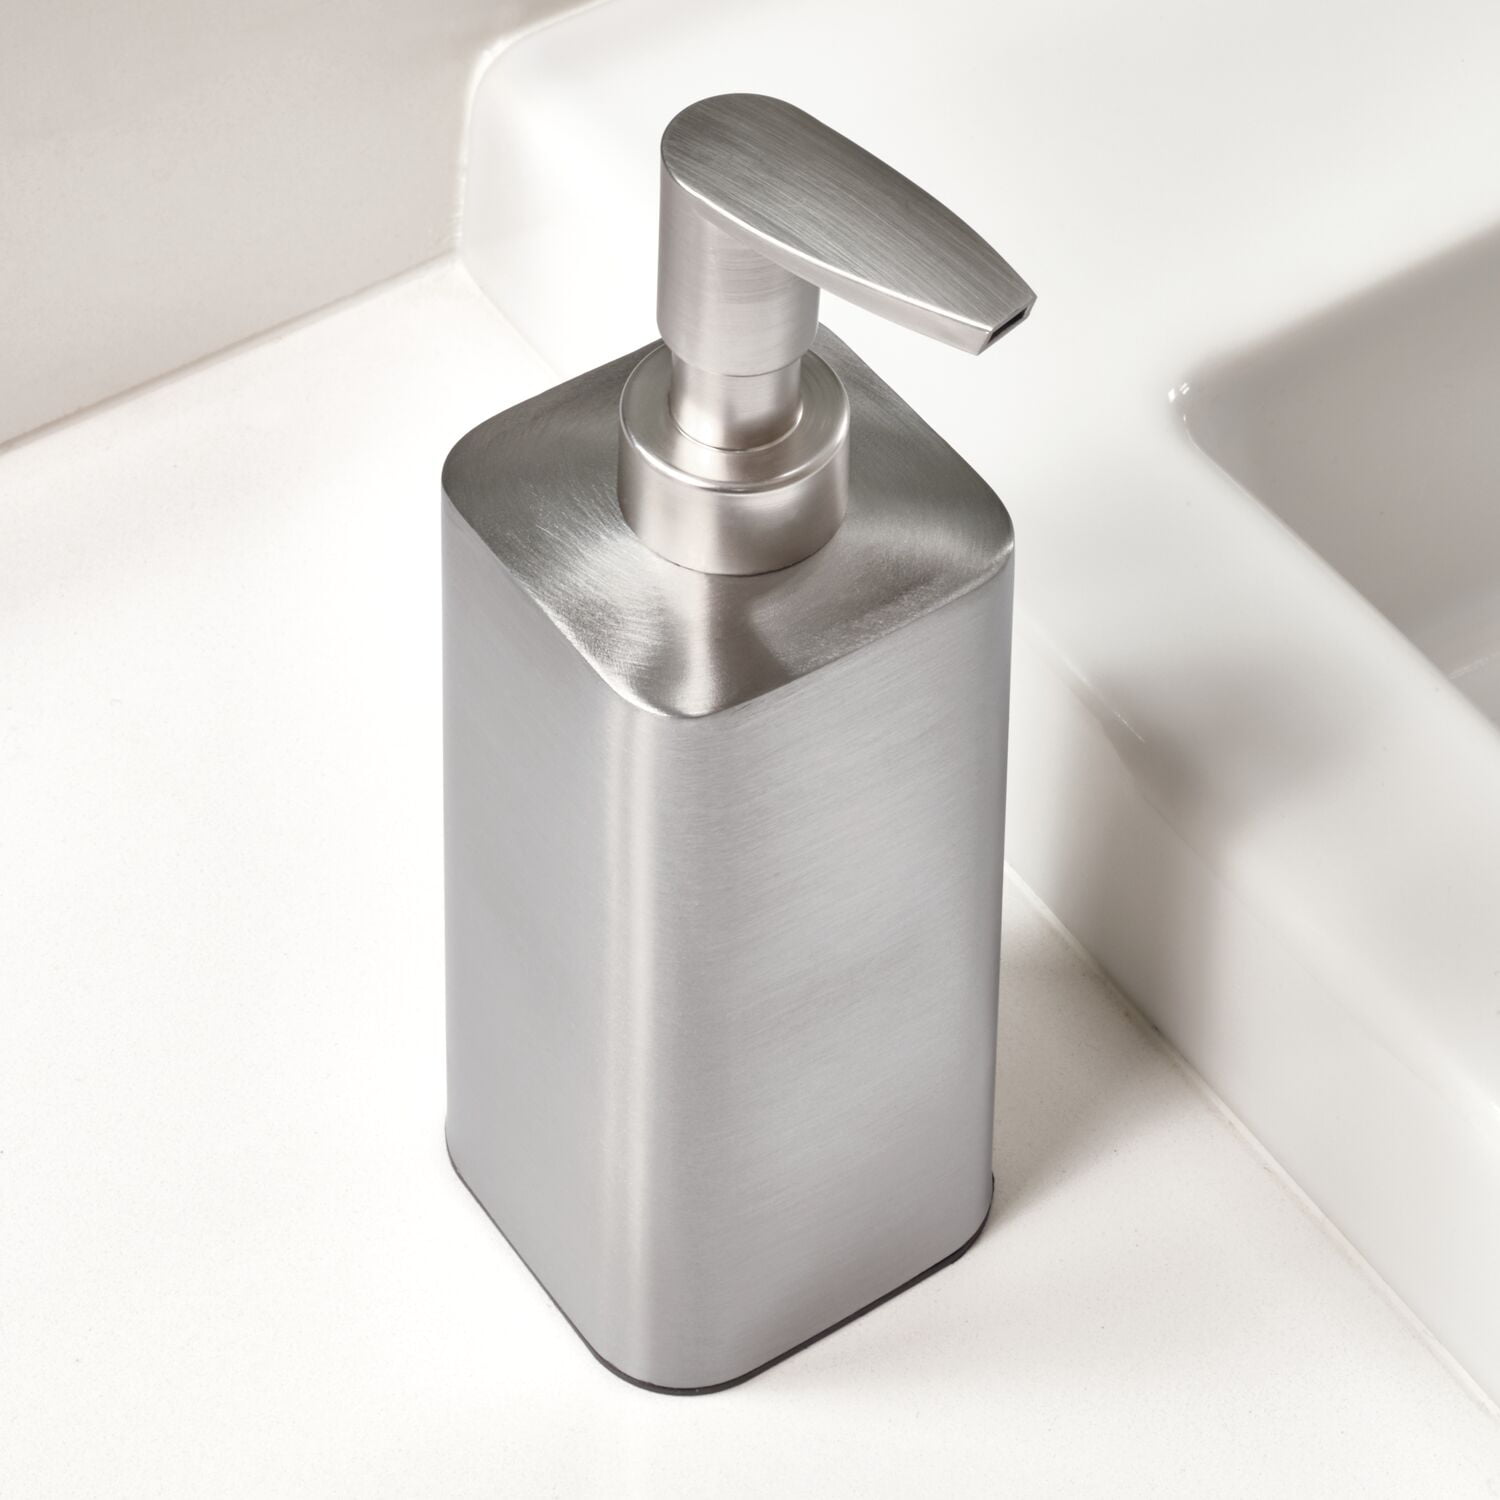 InterDesign Foaming Soap Dispenser Pump 2 Color Options 